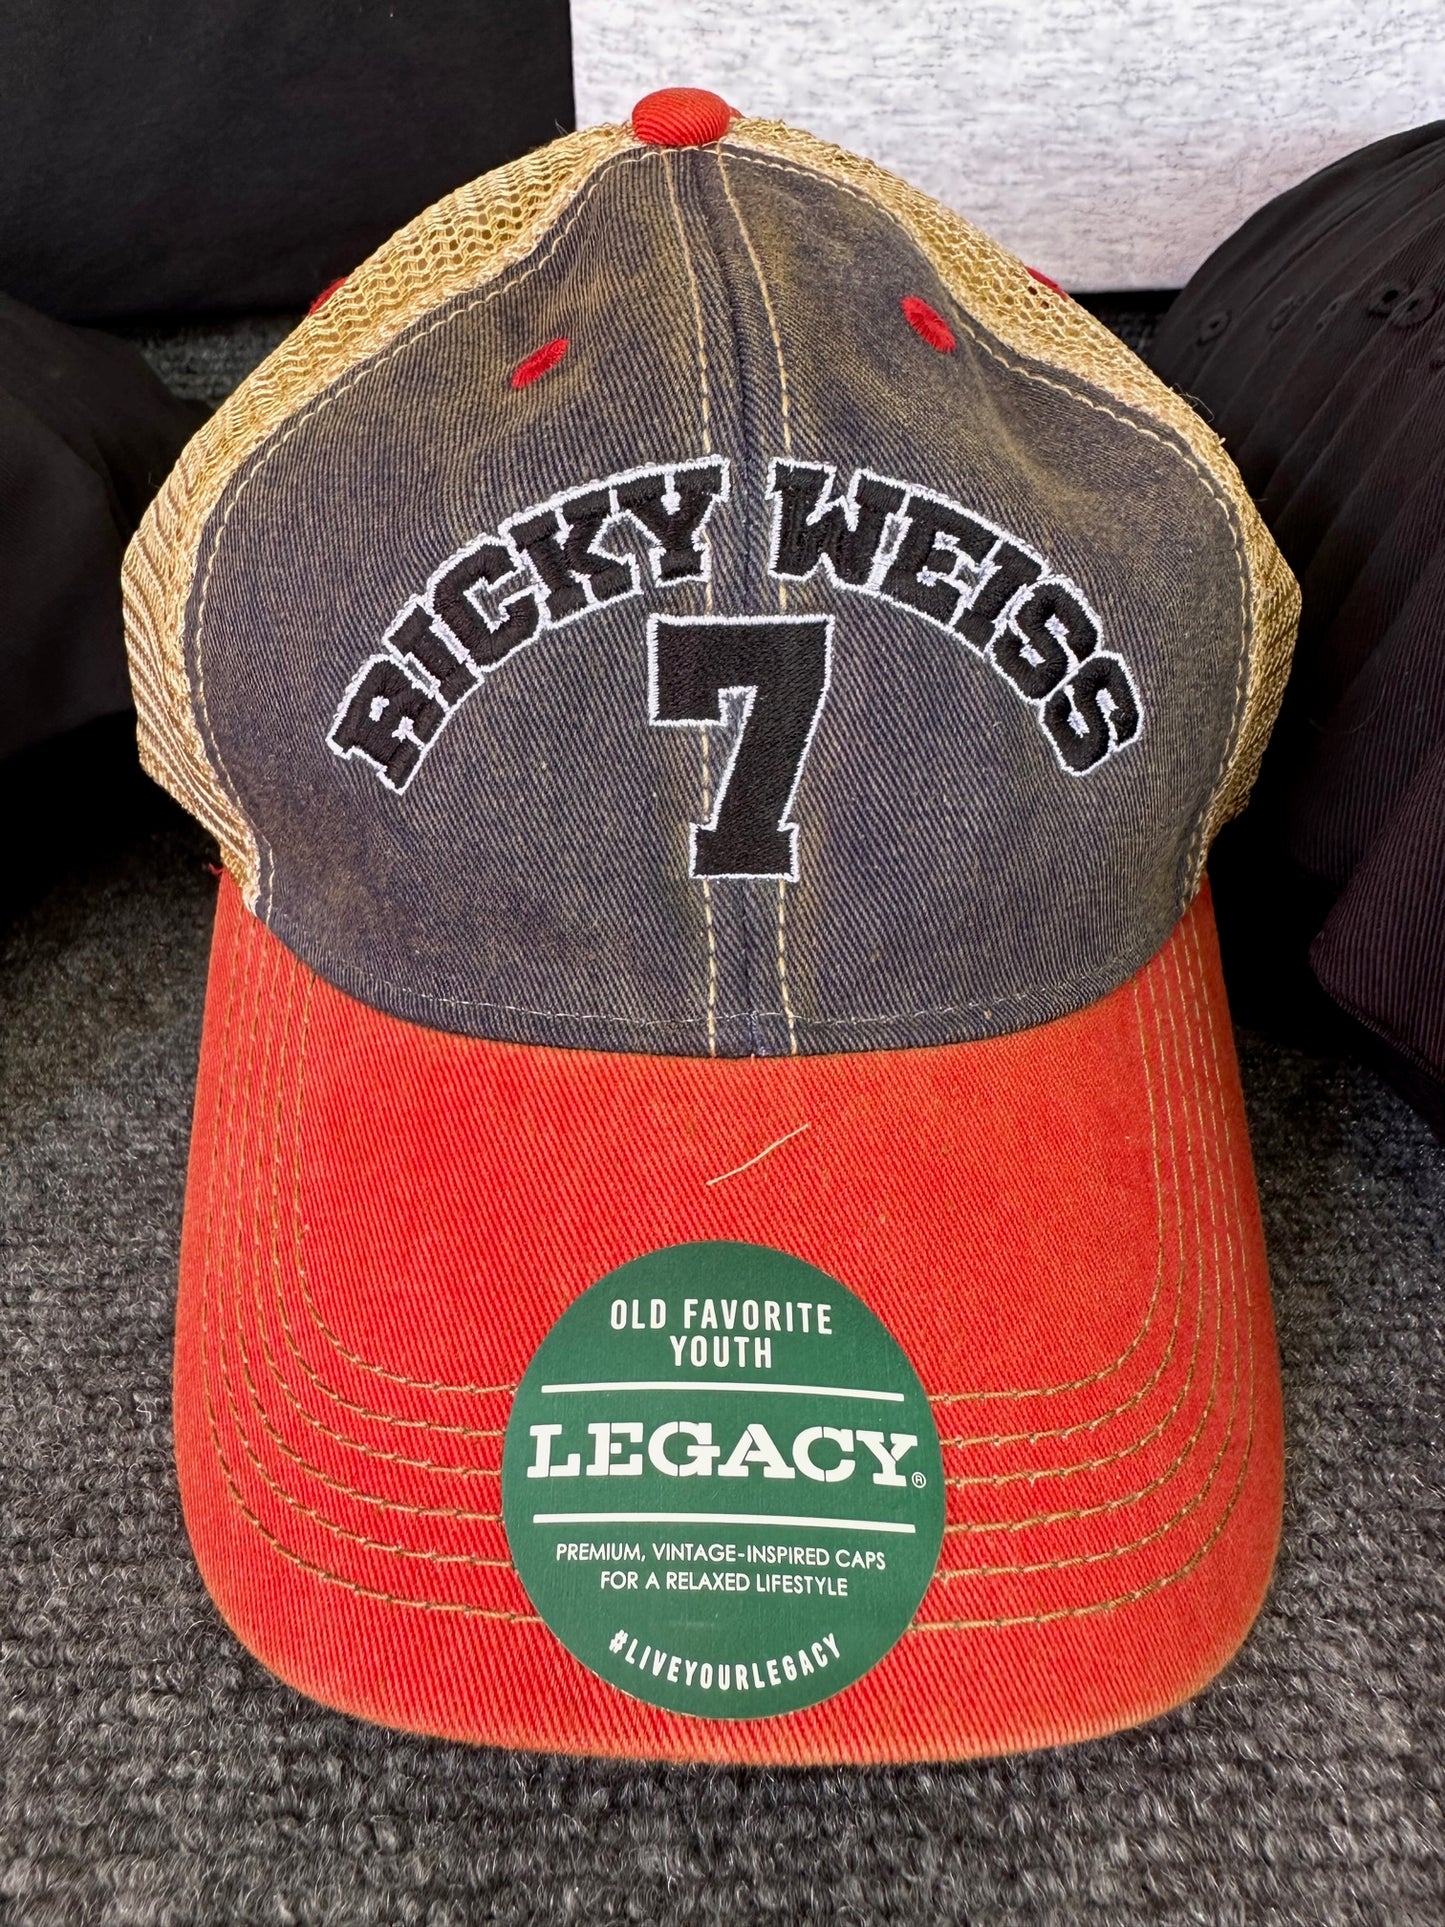 Ricky Weiss #7 Legacy trucker hat